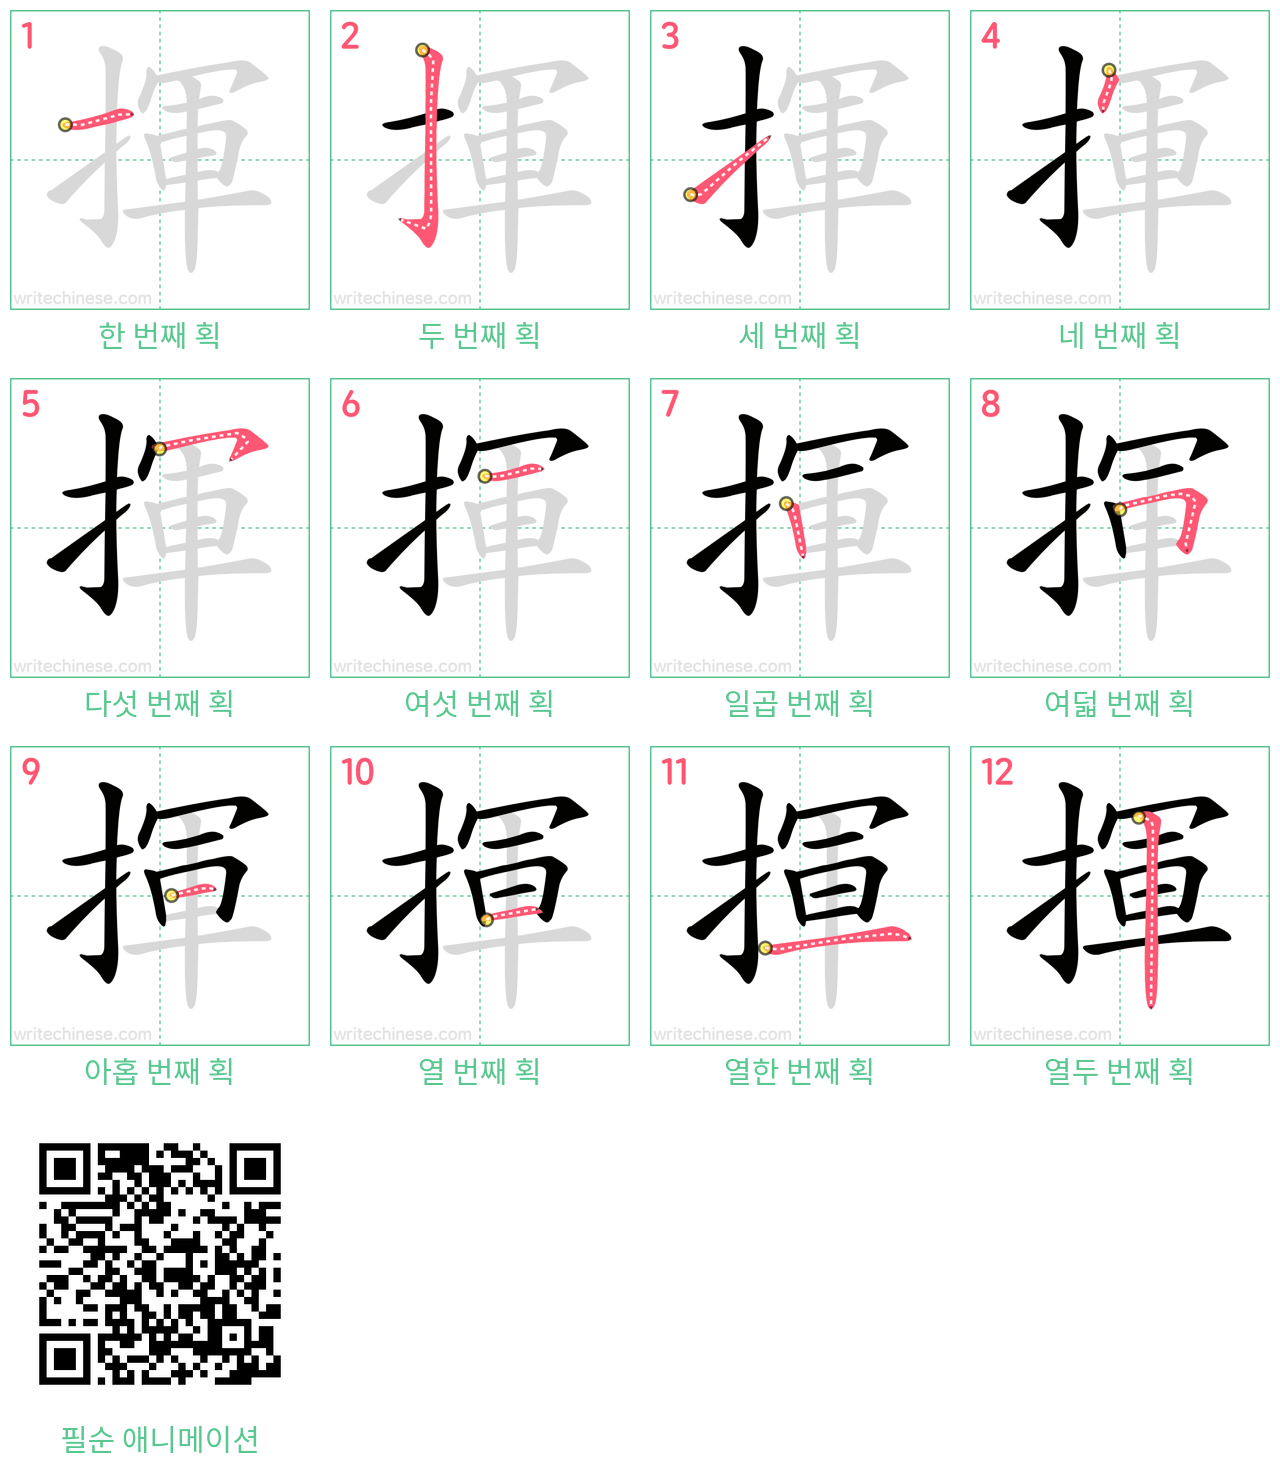 揮 step-by-step stroke order diagrams